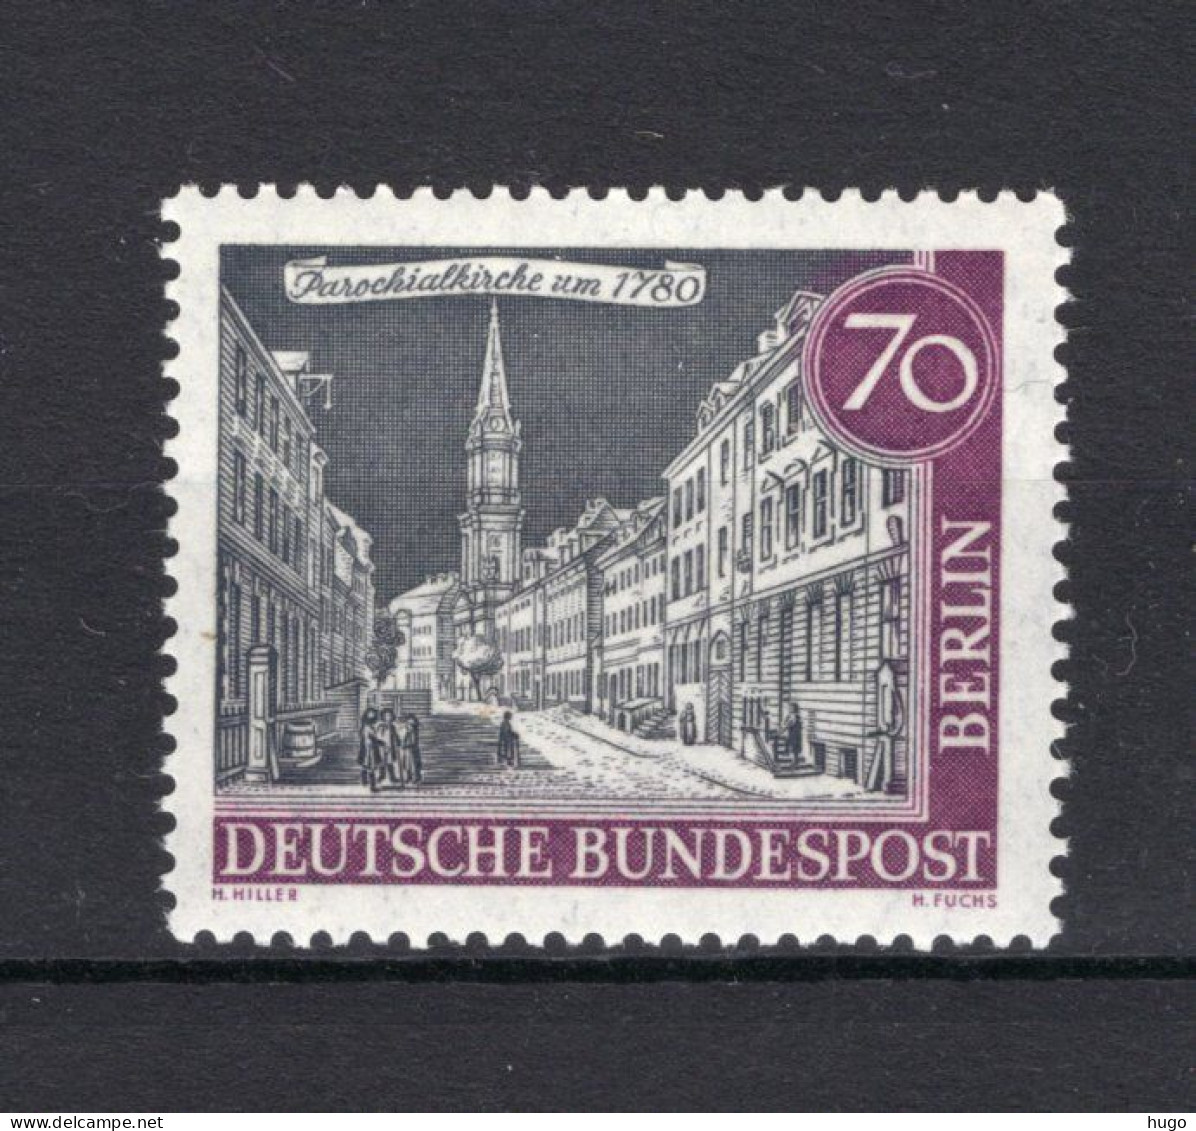 DUITSLAND BERLIN Yt. 204 MNH 1962-1963 - Neufs